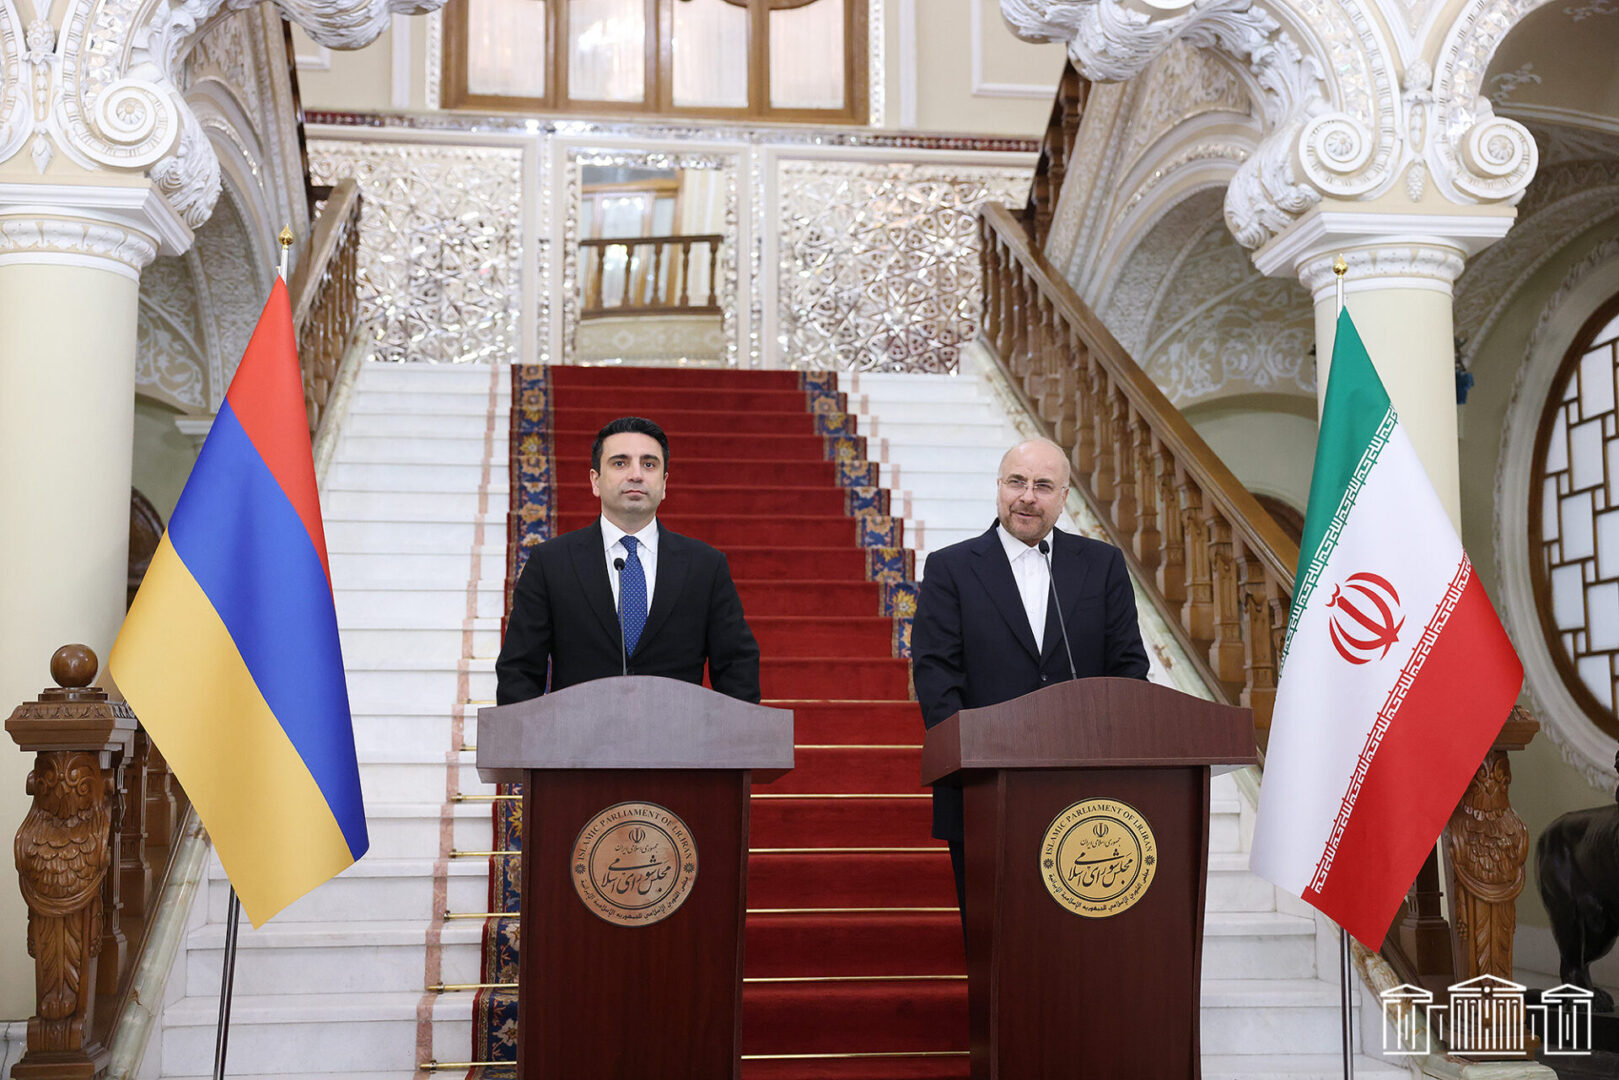 Հայաստանի և Իրանի քաղաքական ղեկավարությունները հաստատակամ են զարգացնելու և խորացնելու հարաբերությունները